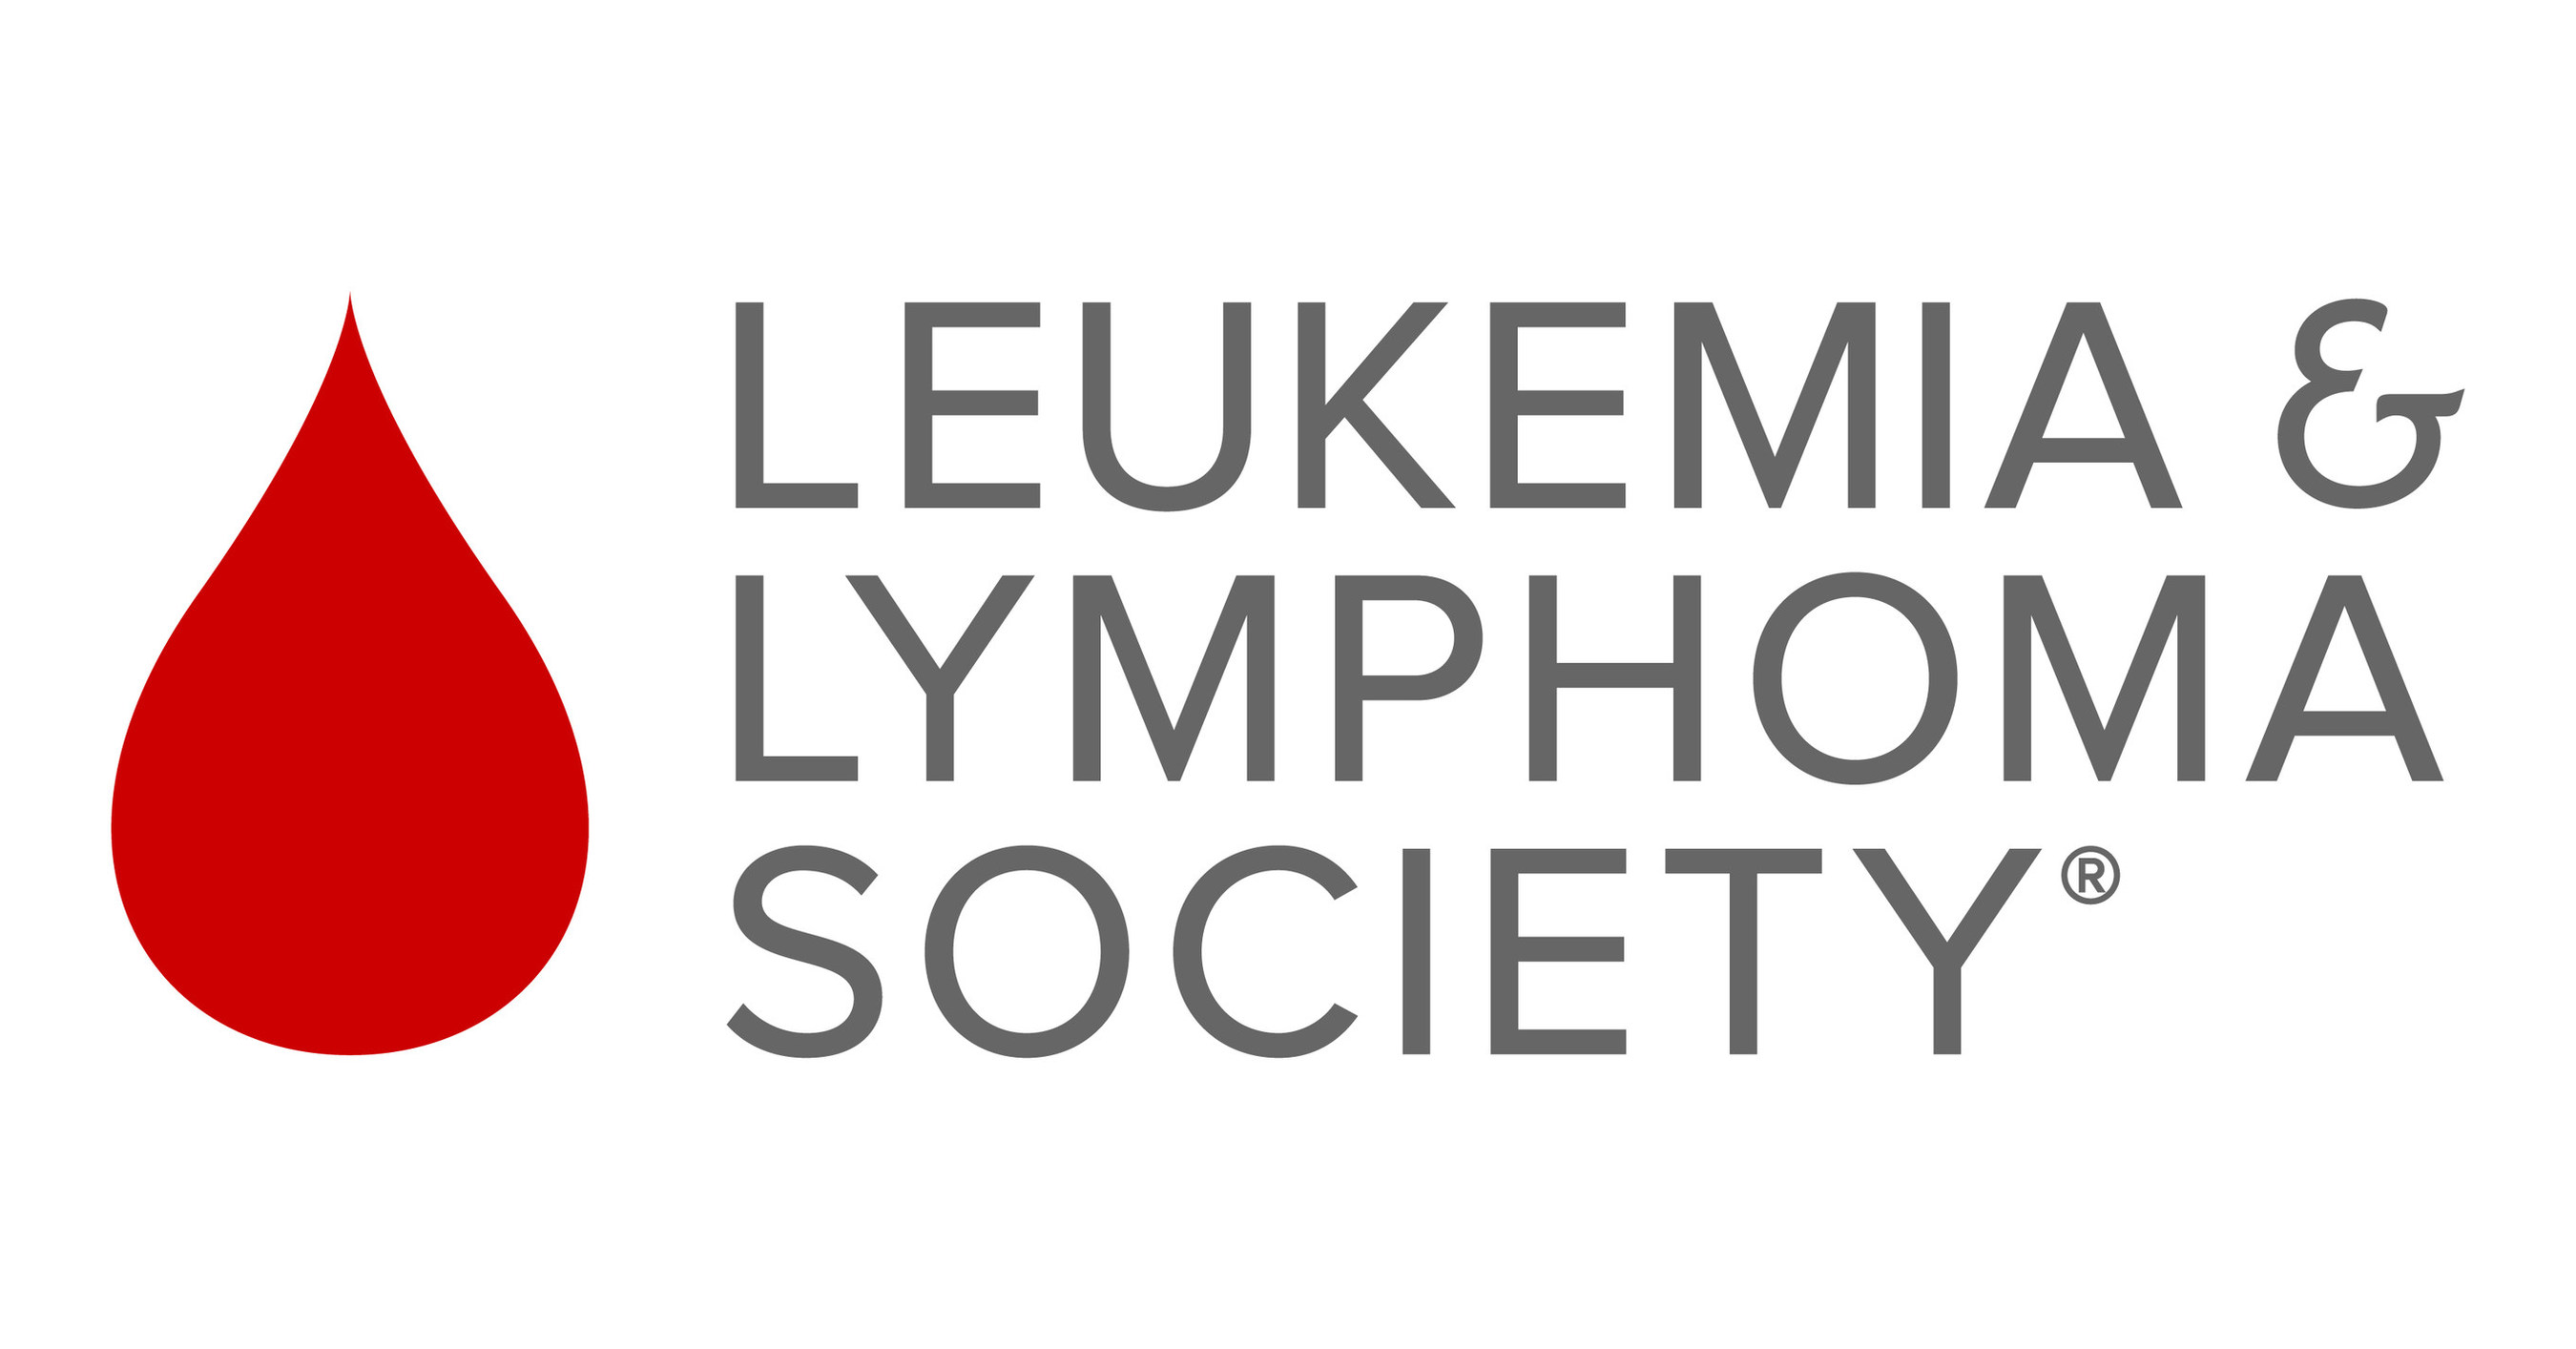 The Leukemia & Lymphoma Society Logo